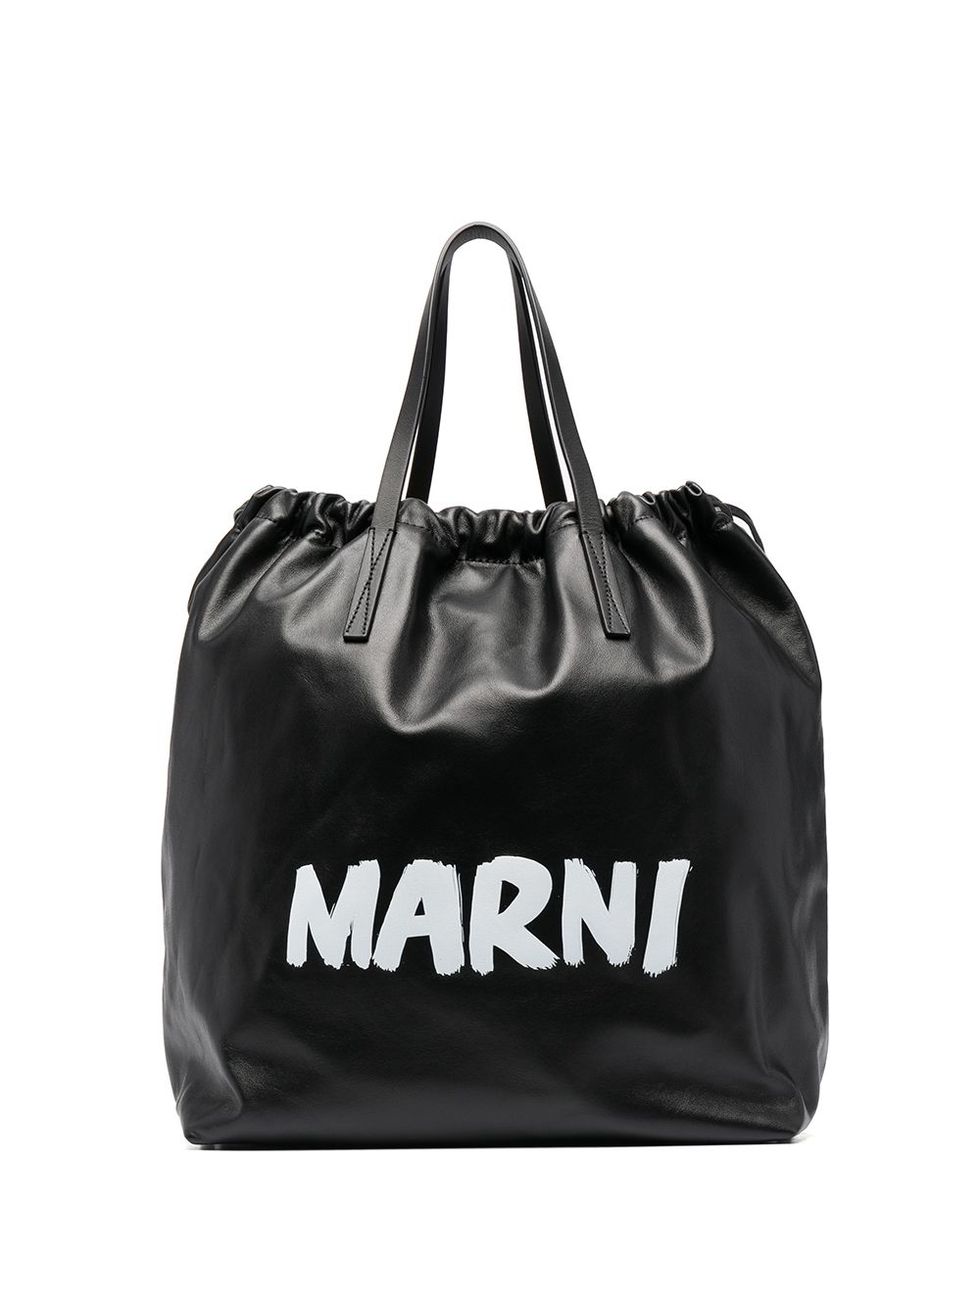 後背包推薦：Marni Logo字樣皮革後背包